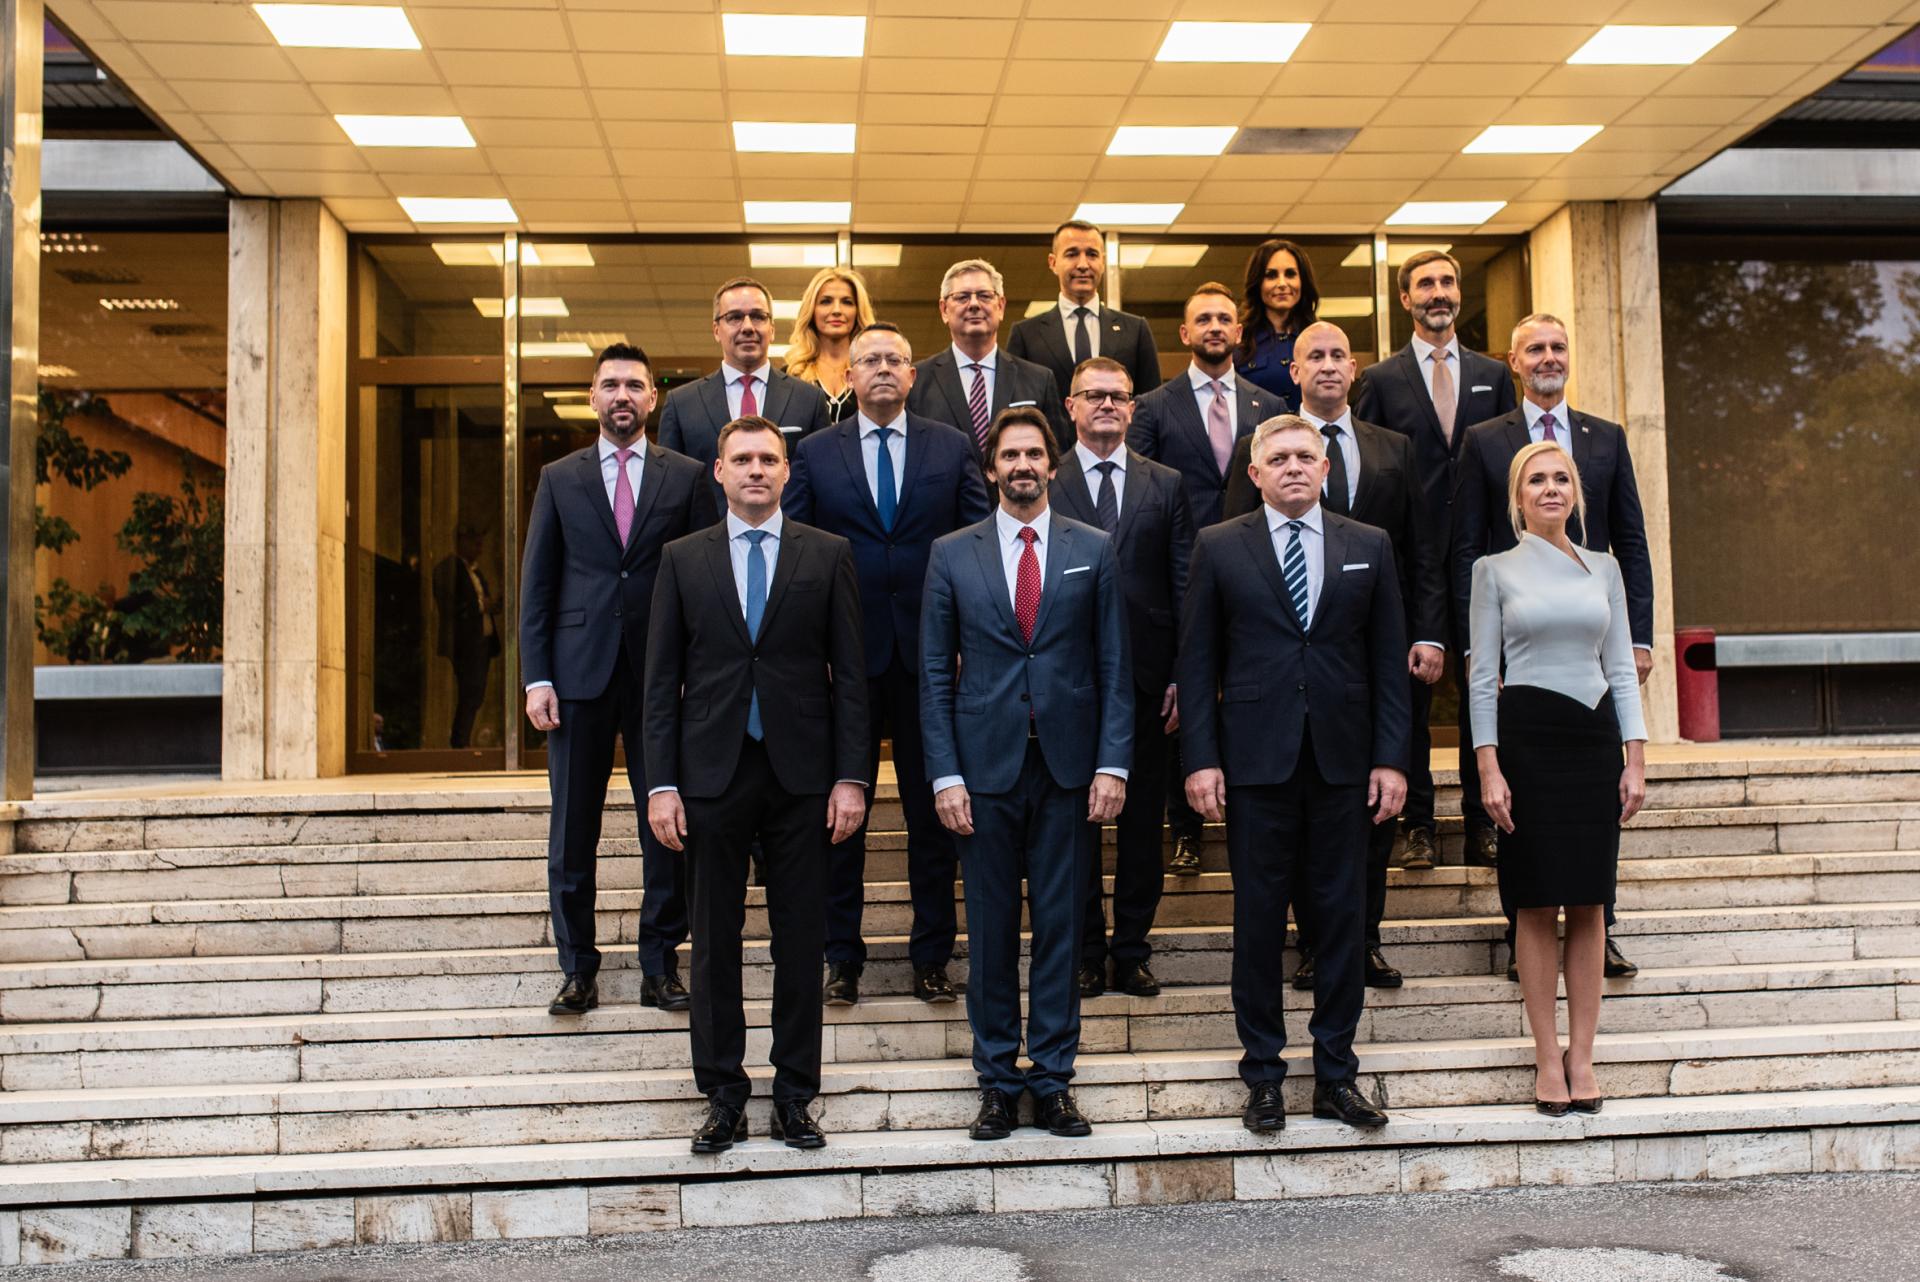 Ficov kabinet sa stretol po prvýkrát: Ministri odchádzali na úrad vlády hneď po vymenovaní